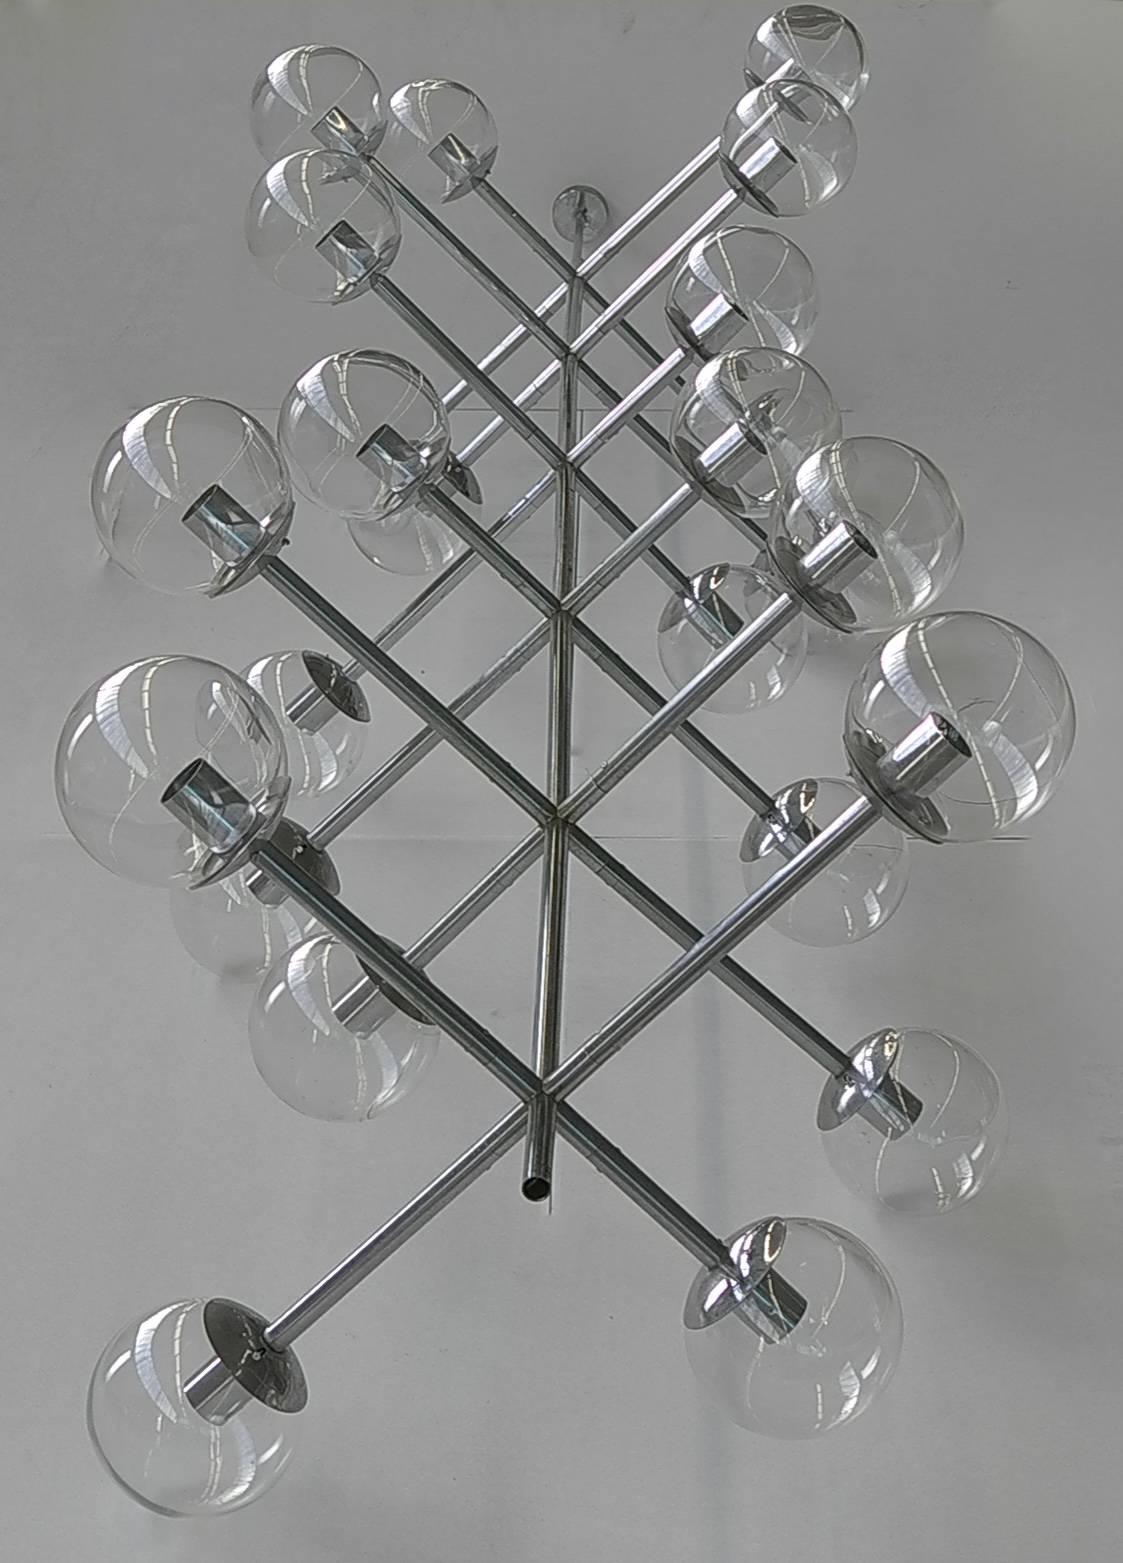 Extra große Kugellampe aus Chrom und Glas, 1960er Jahre
Diese Lampe kann auch in ein Lampenpaar aufgeteilt werden.
insgesamt 24 durchsichtige Glaskugeln.